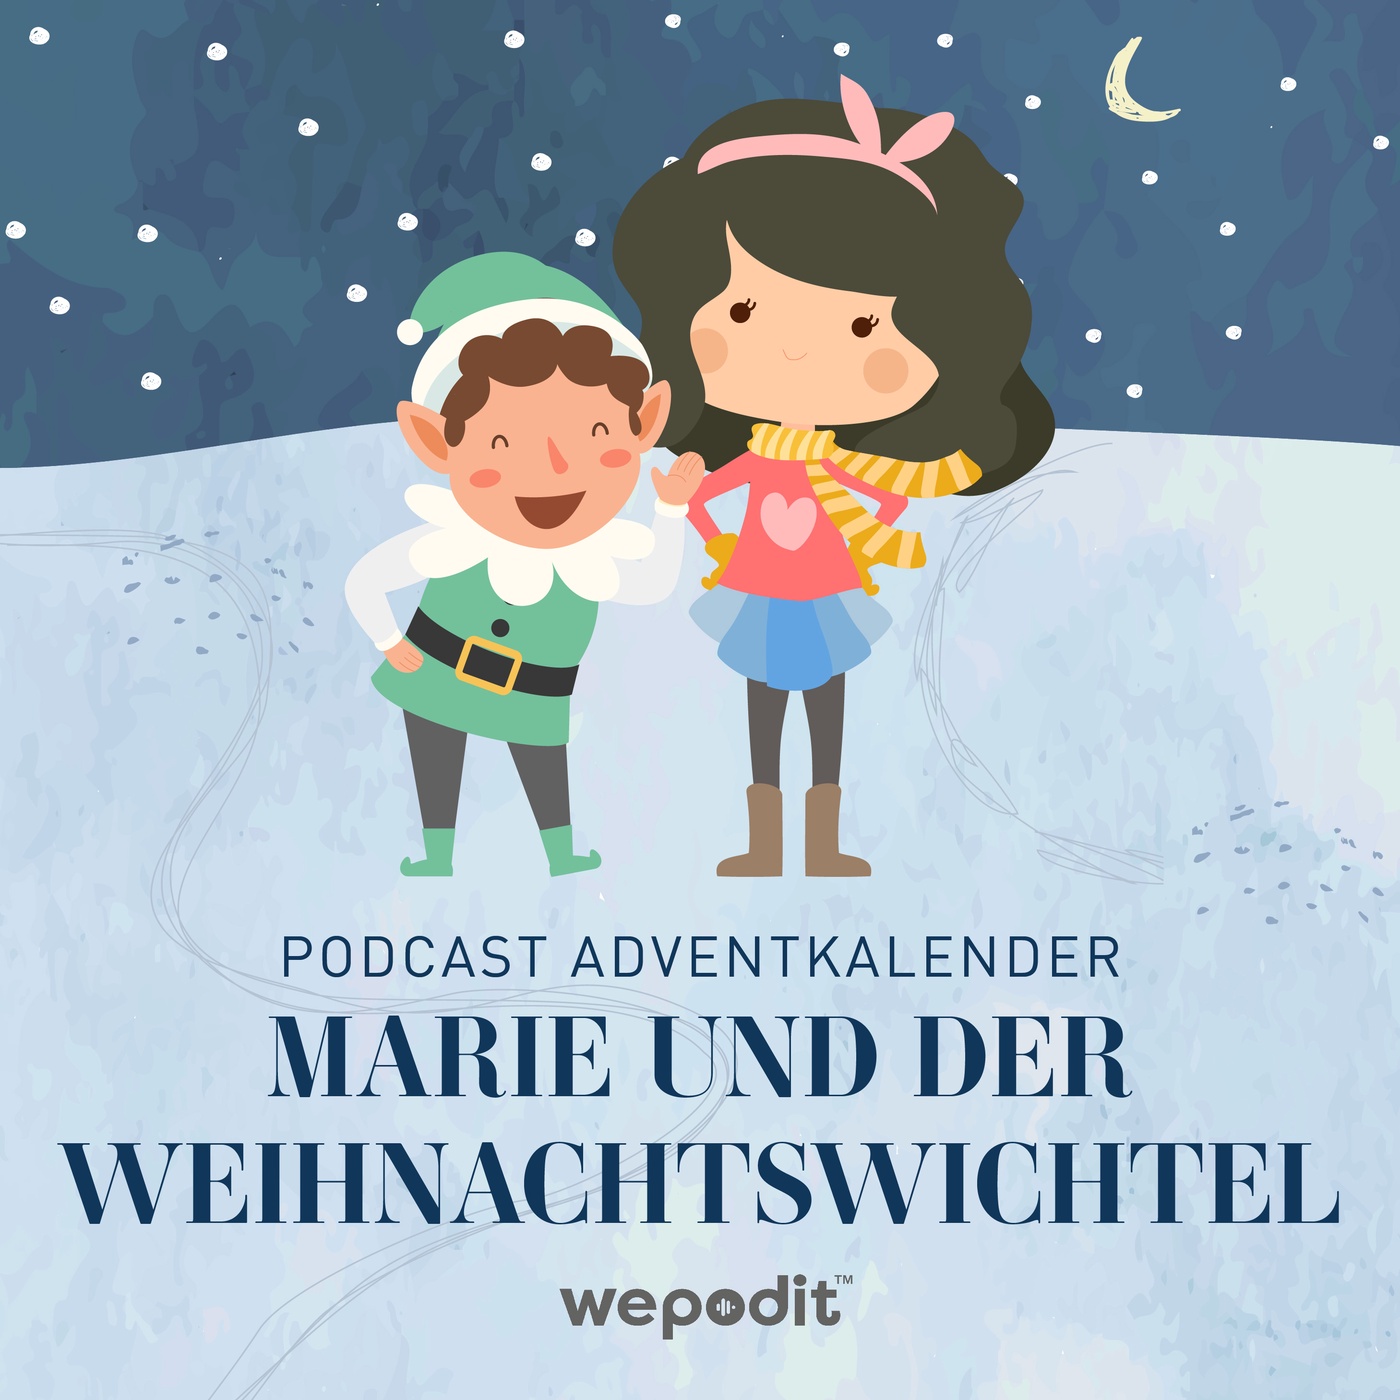 Podcast Adventkalender - Marie und der Weihnachtswichtel